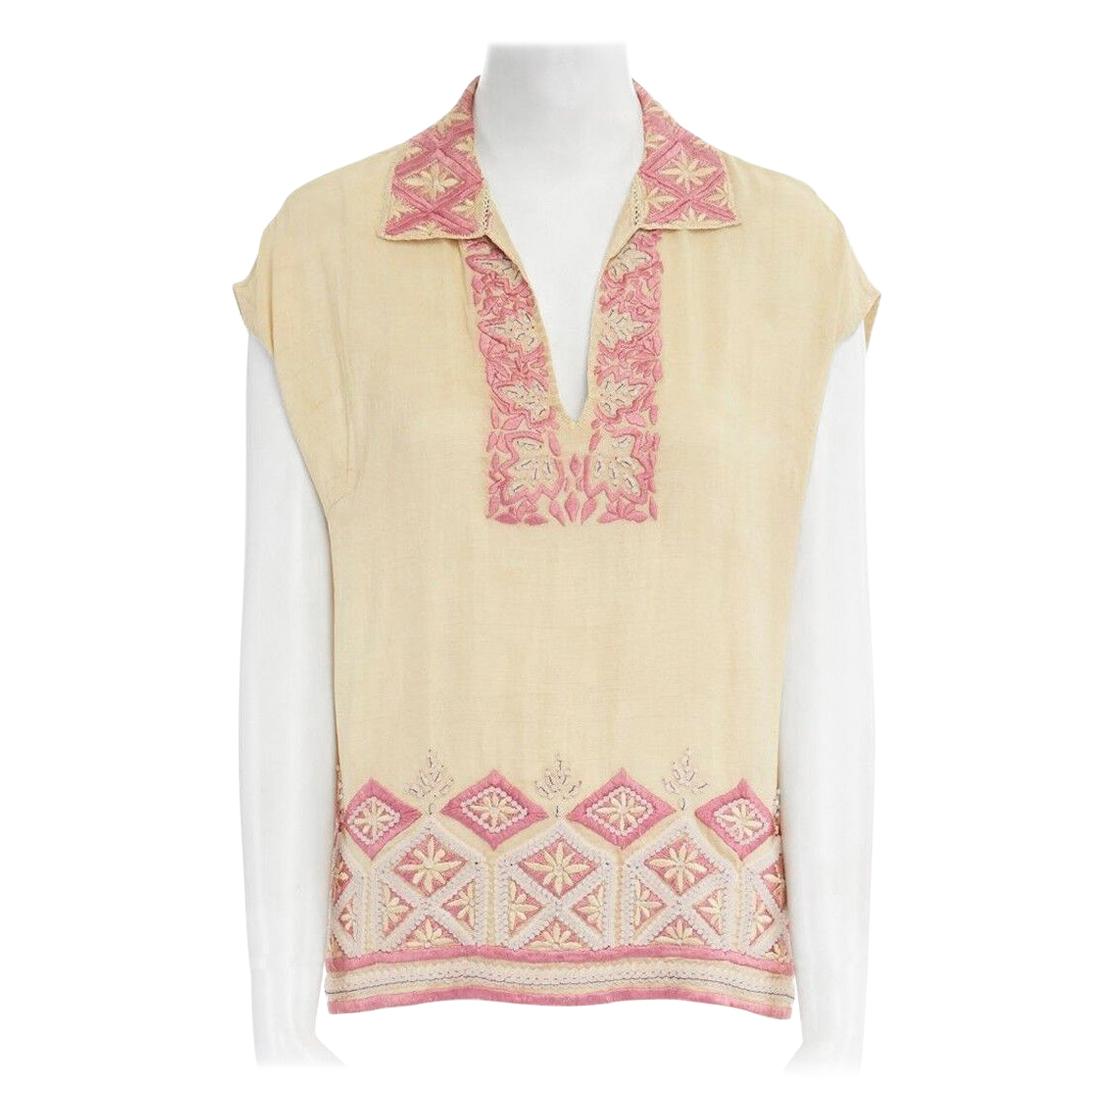 runway DRIES VAN NOTEN beige pink ethnic beaded embroidery sleeveless top FR38 M